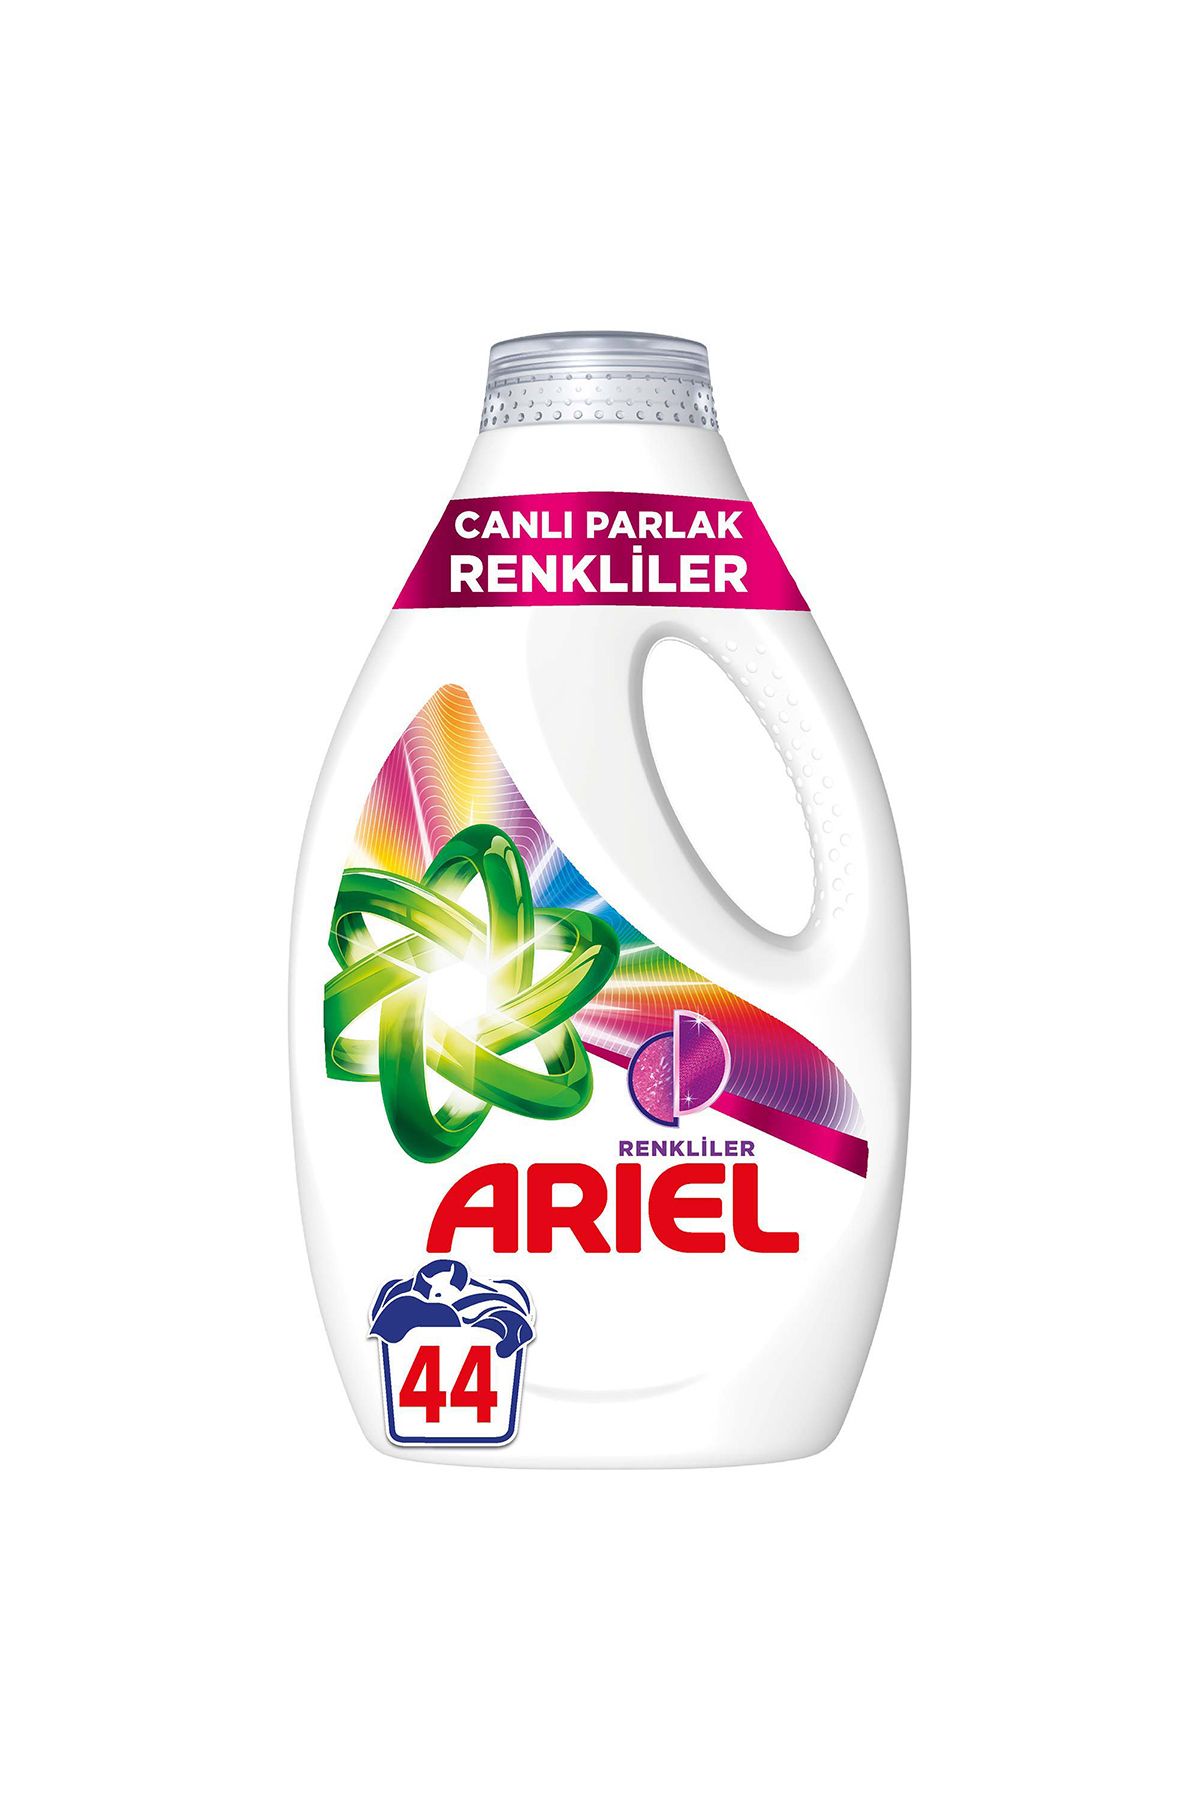 Ariel Canlı Parlak Renkliler Sıvı Çamaşır Deterjanı 44 Yıkama